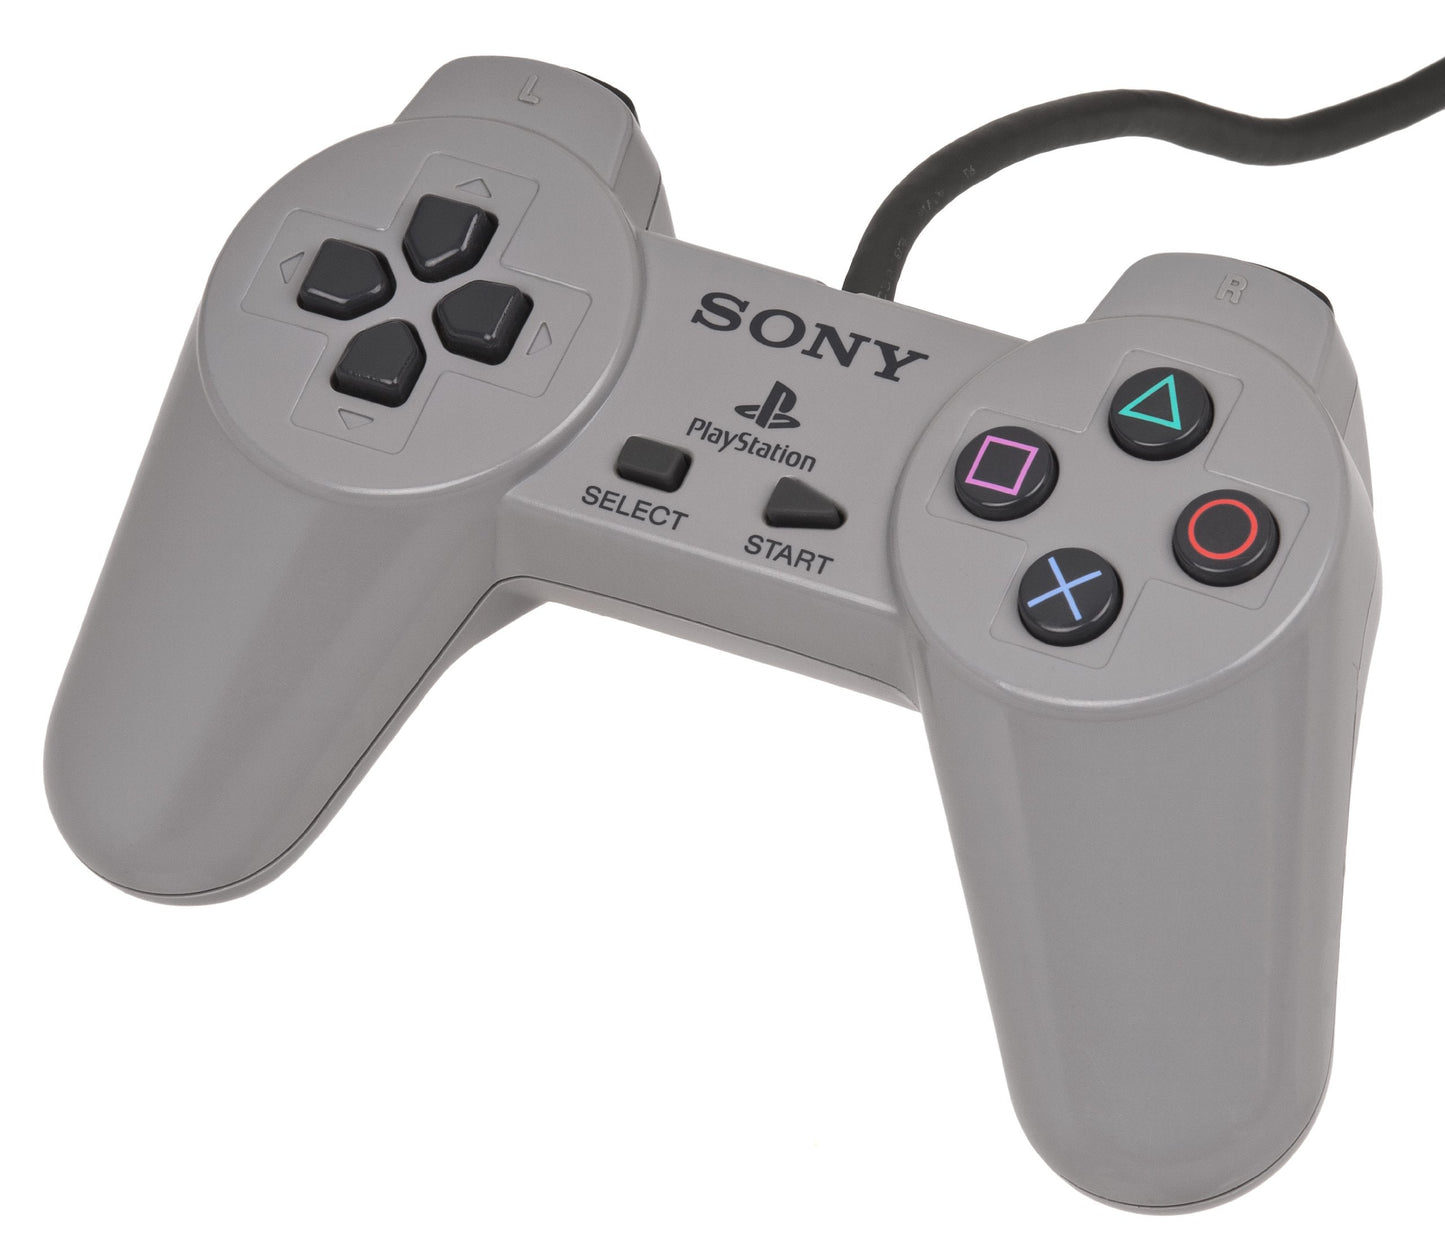 Playstation Controller (Non-Dualshock) - Gray